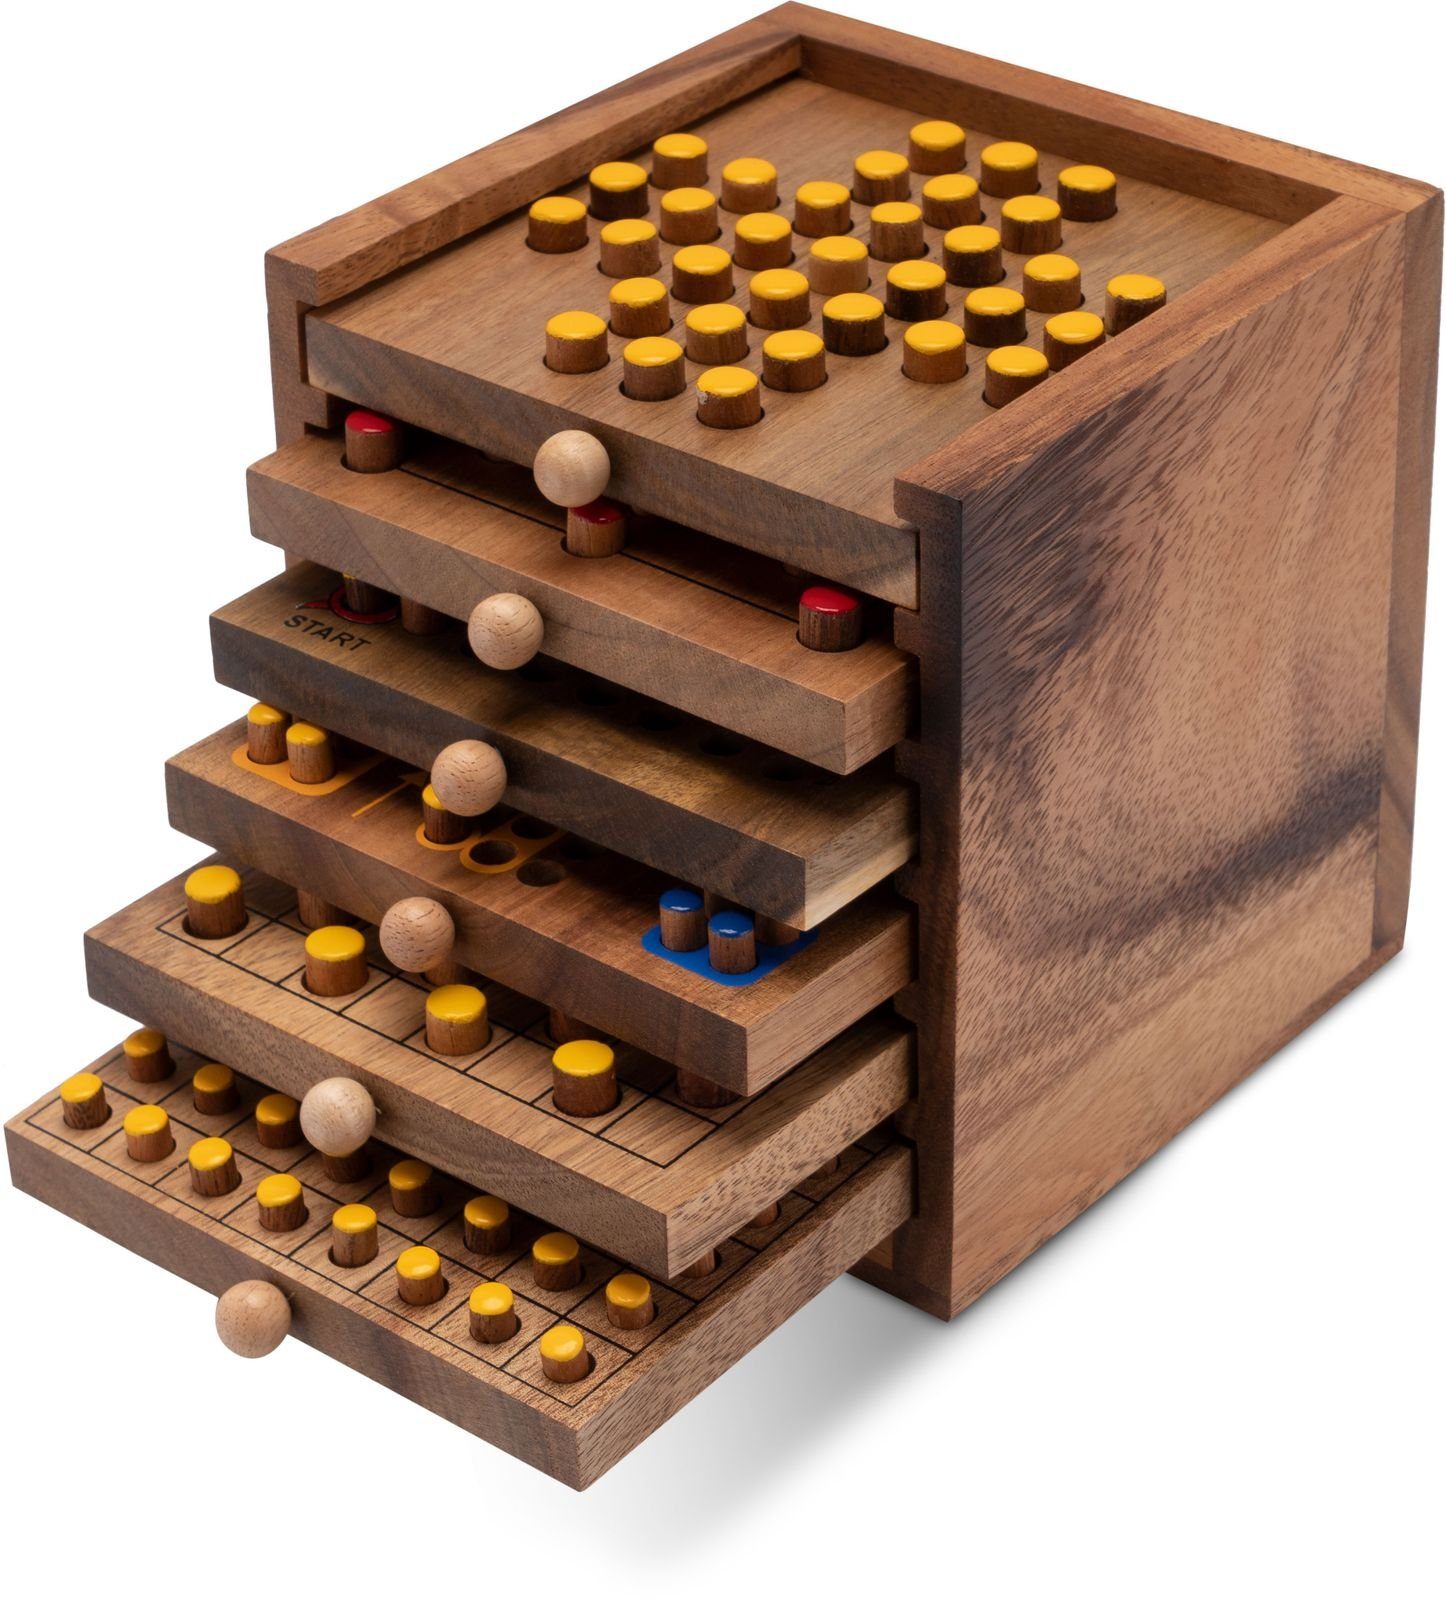 Logoplay Holzspiele Spiel, Spiele-Sammlung aus Holz in einer dekorativen  Box mit EinschübenHolzspielzeug